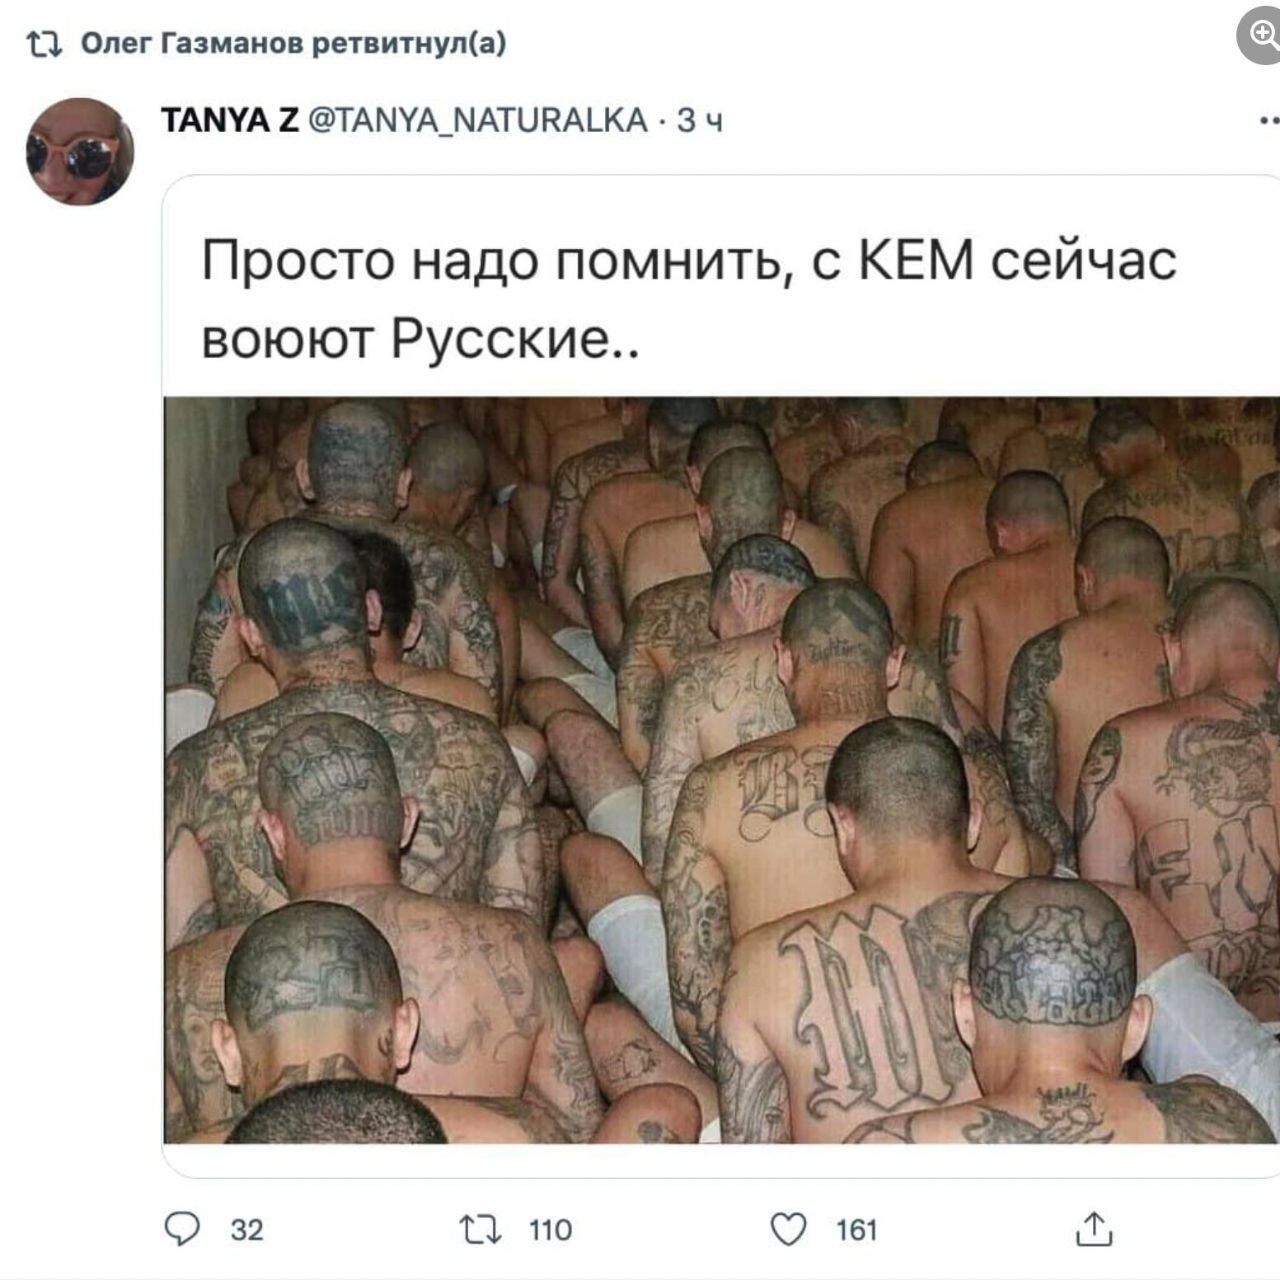 Олег Газманов хотел подставить украинских военных, но опозорился фото банды из Сальвадора